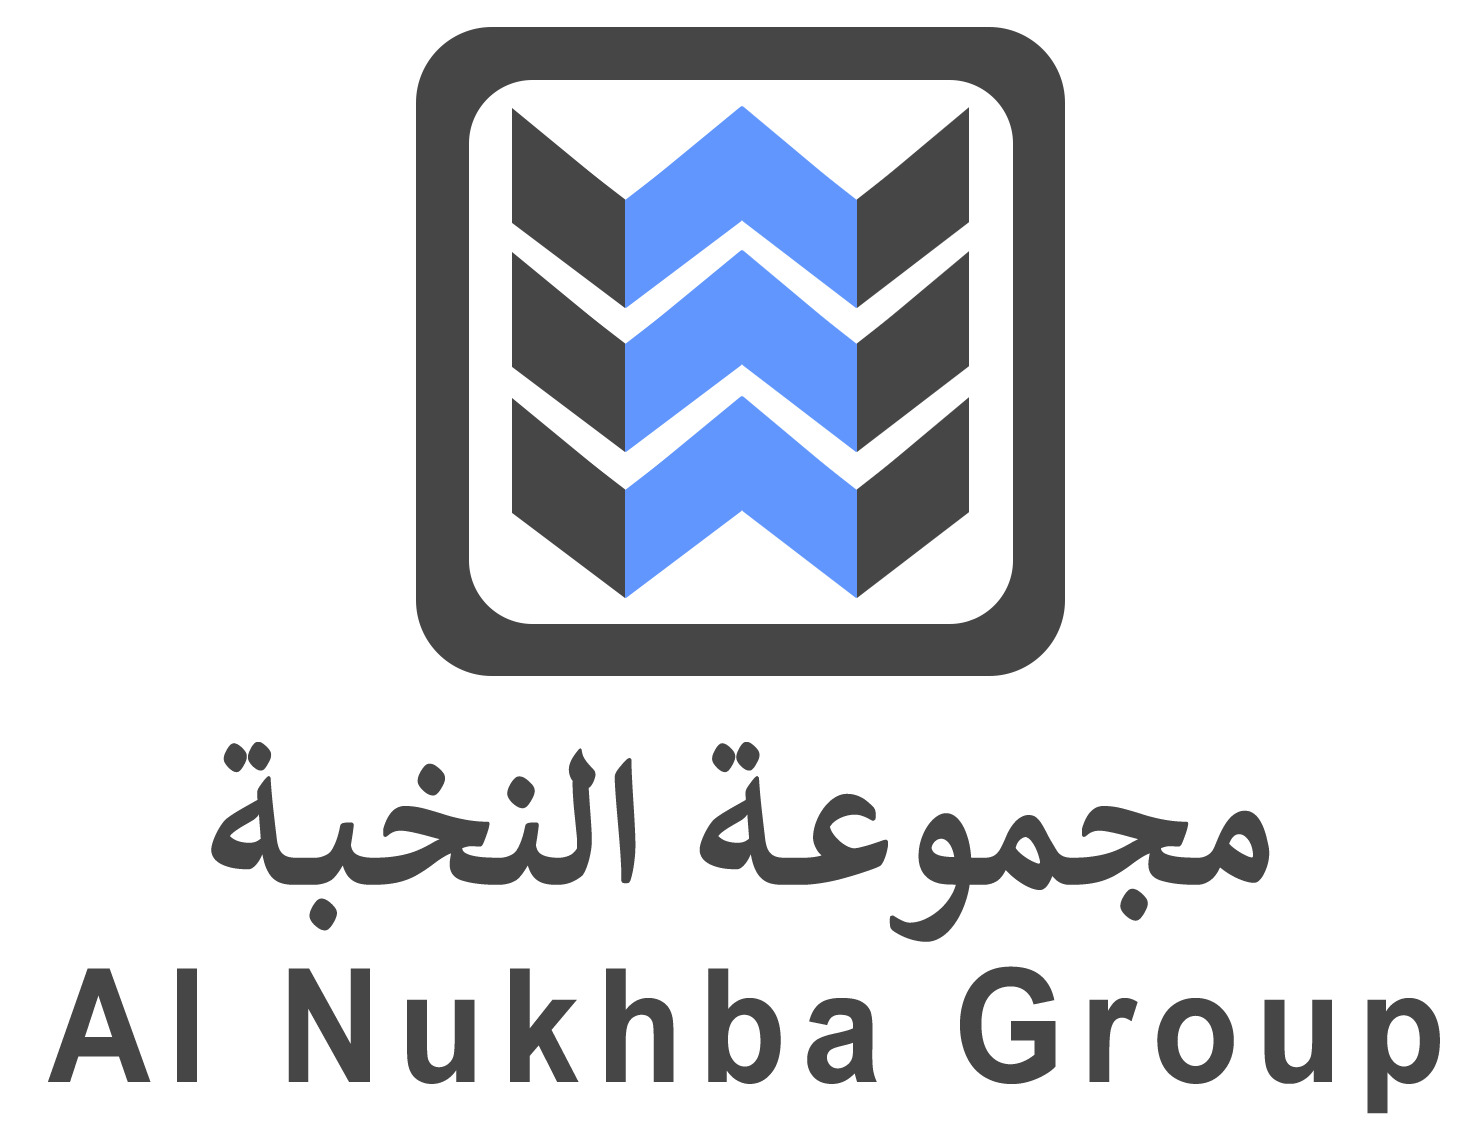 Al Nukhba Group